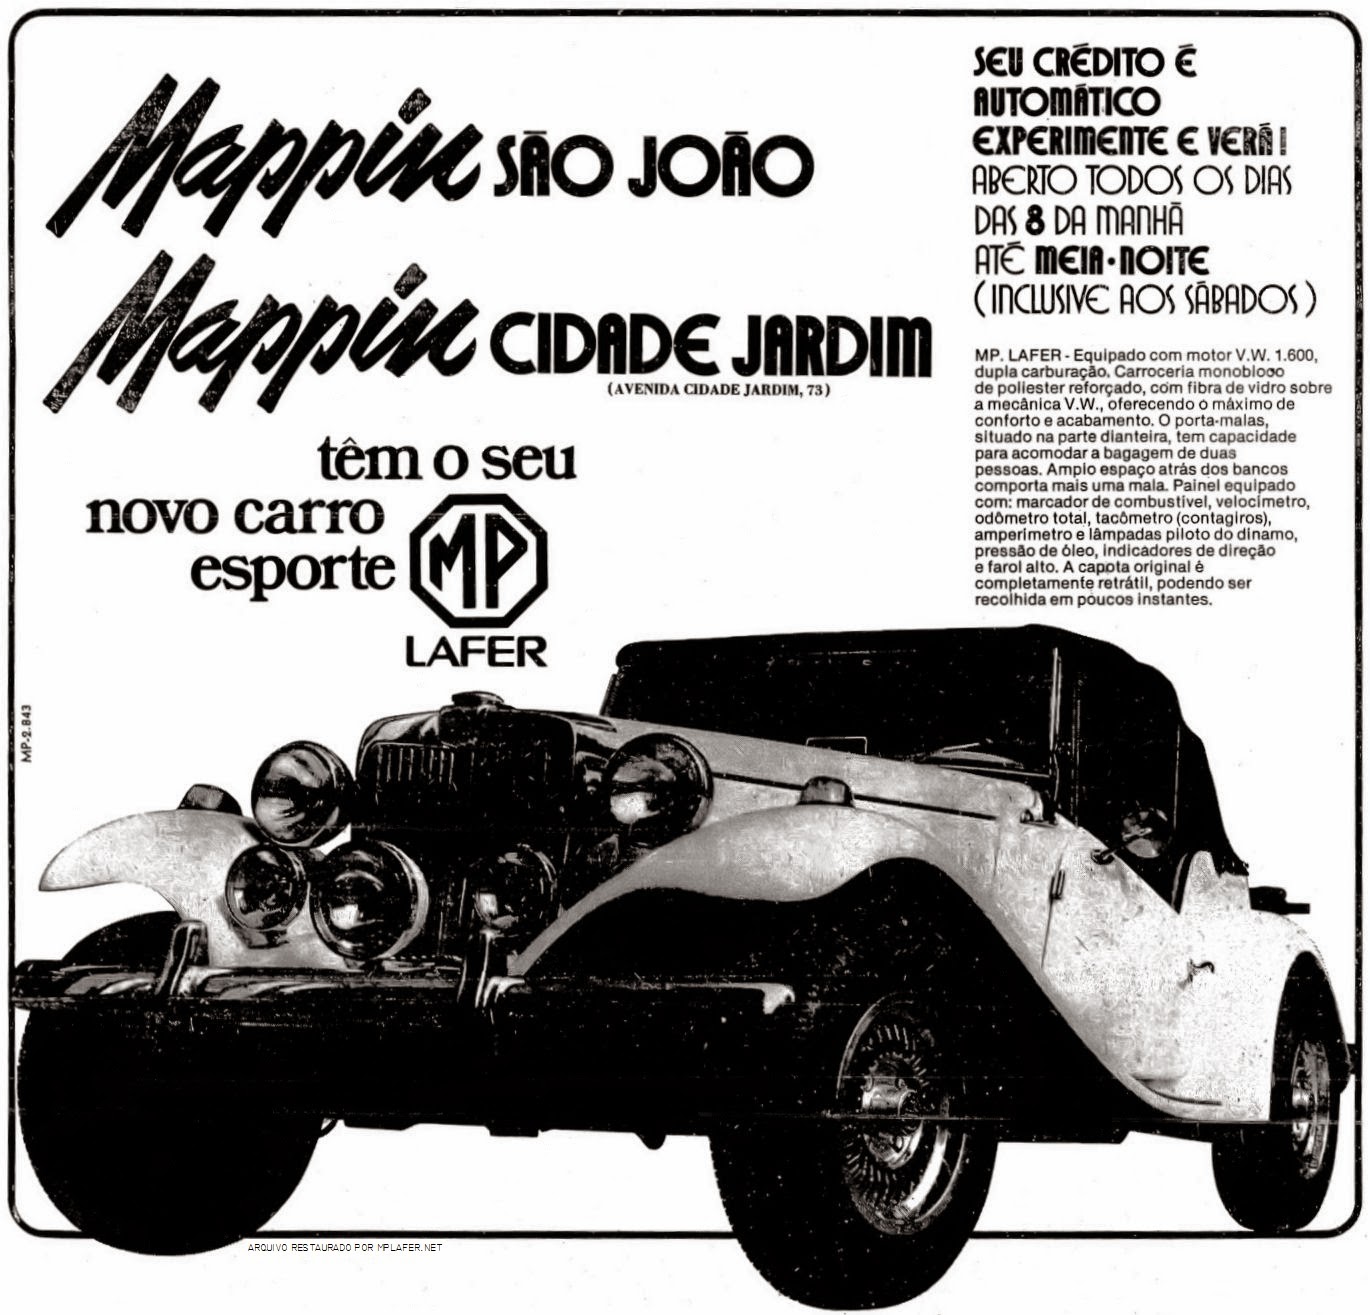 Um MP Lafer no anúncio do Mappin, publicado nos principais jornais de São Paulo em meados de 1976.